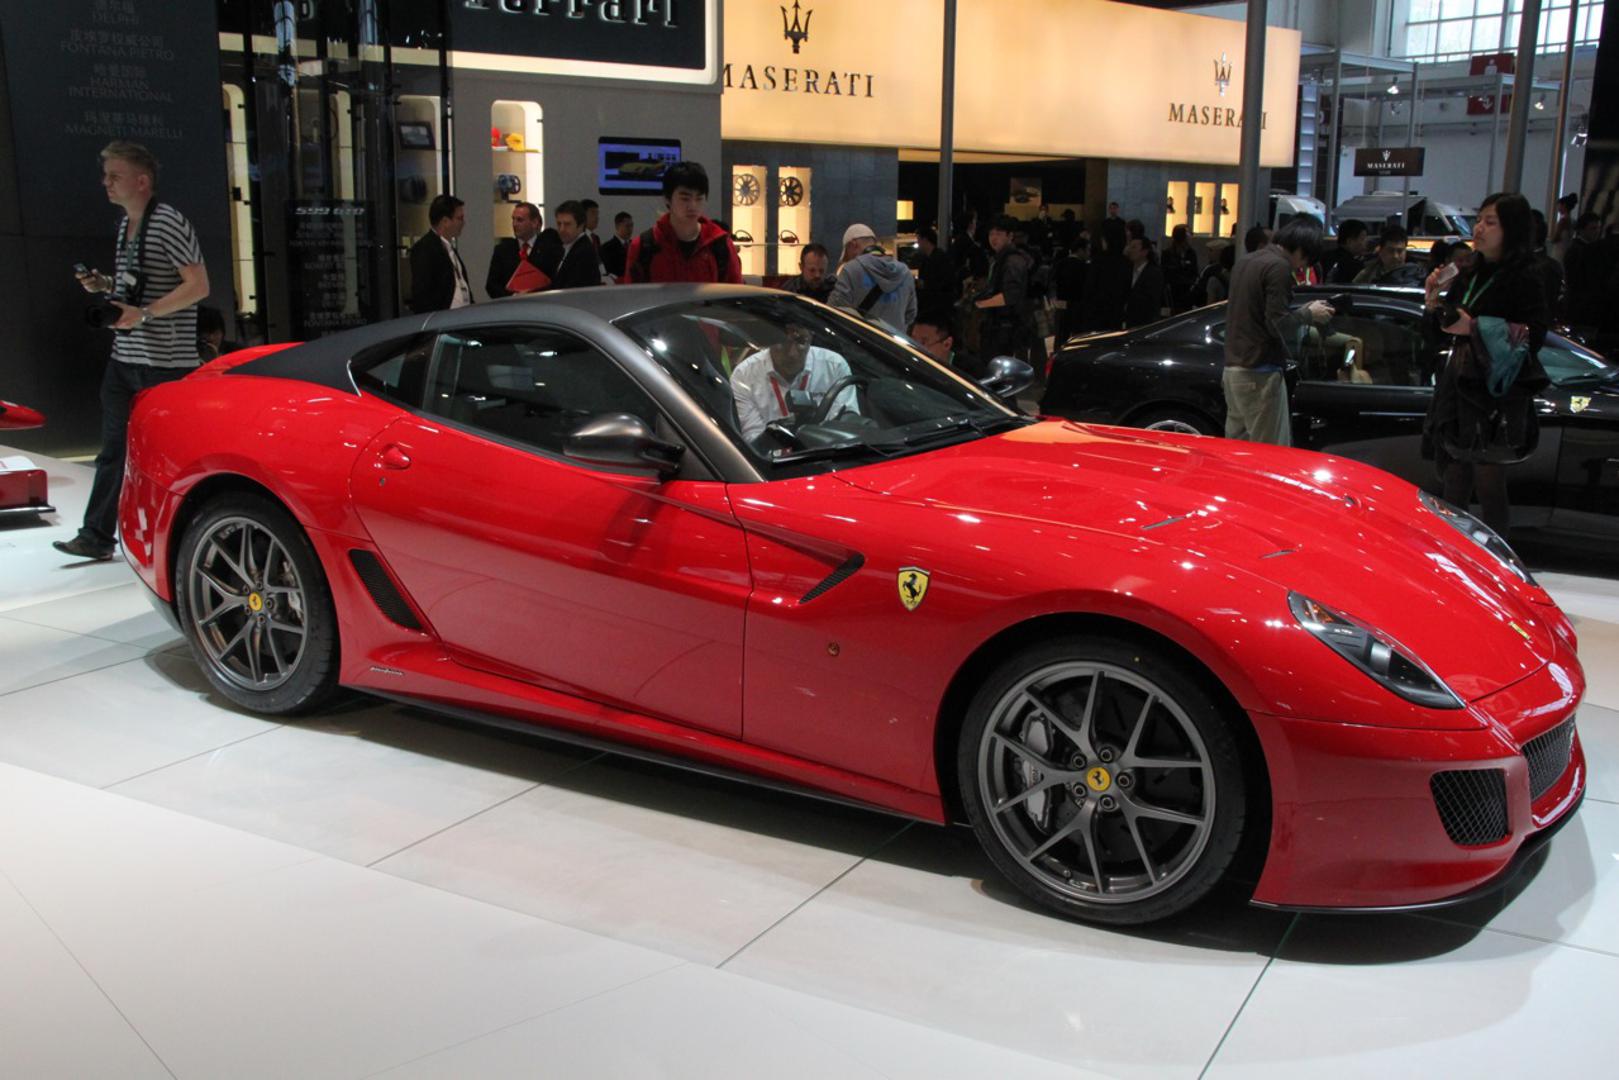 Francesco Totti - Ferrari 599 GTO - 2,9 milijuna kuna